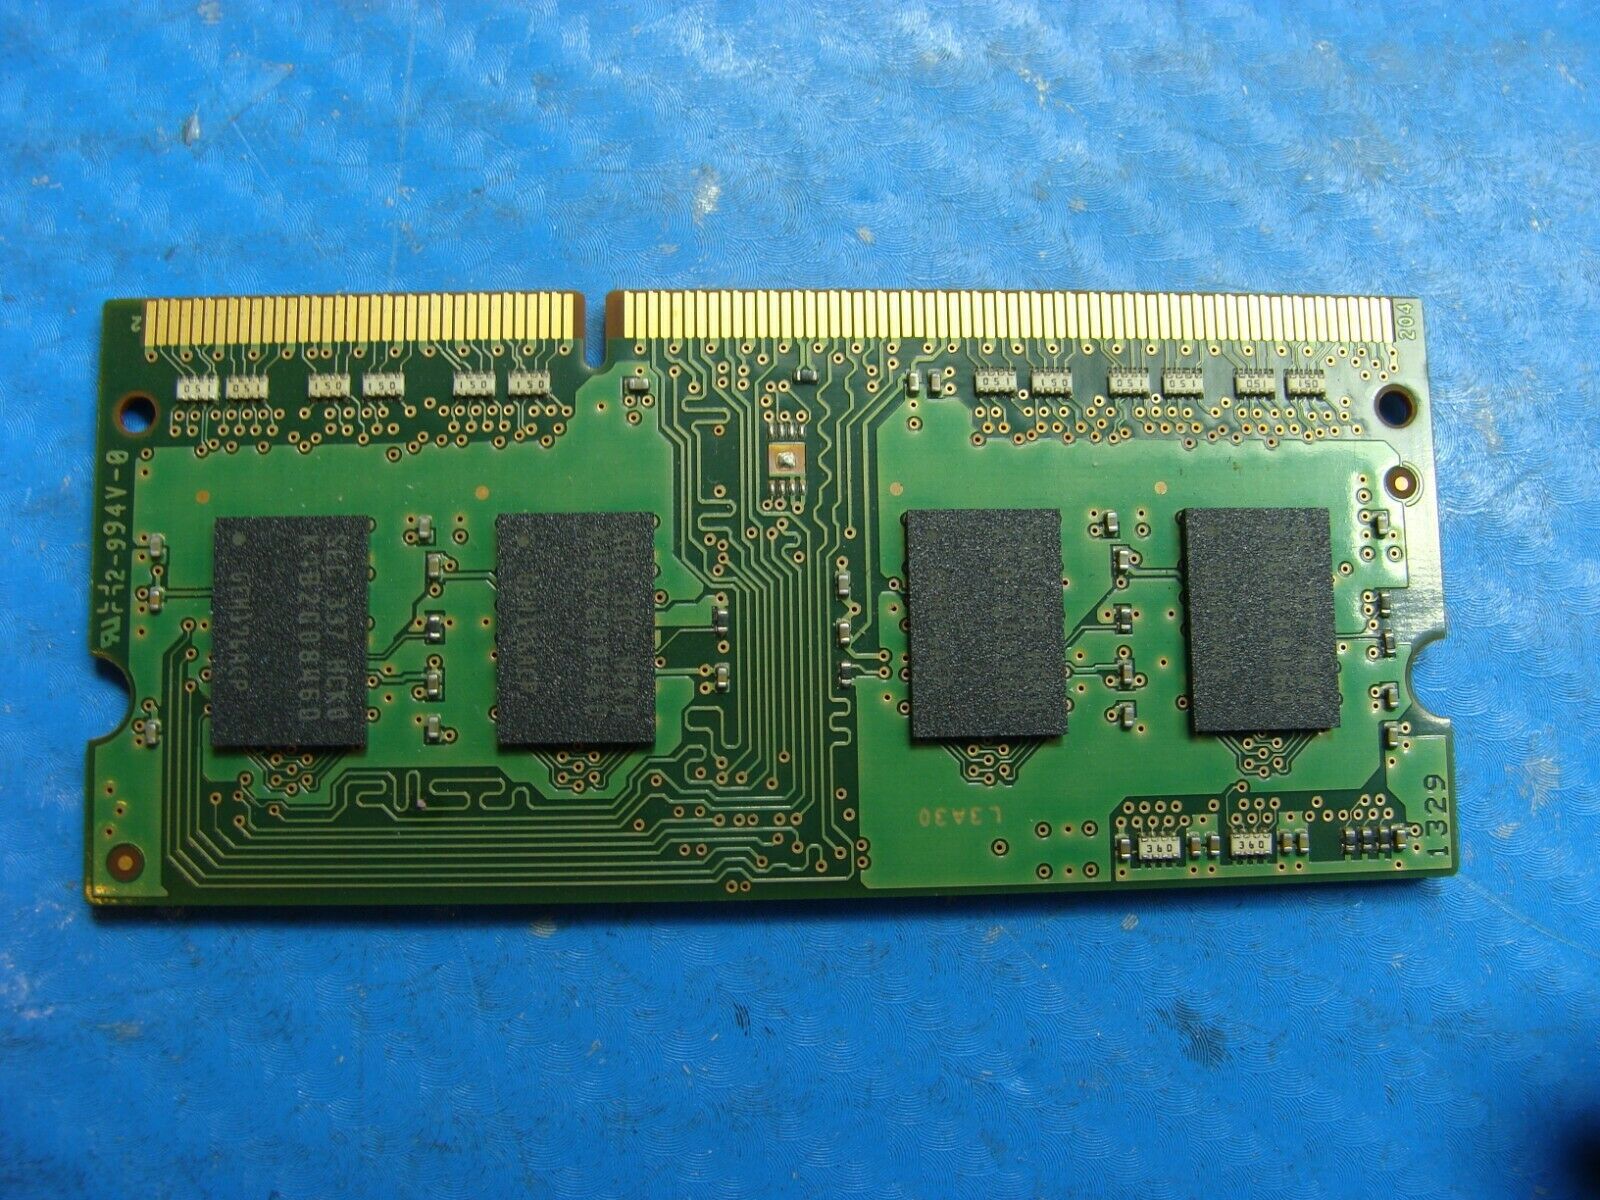 Samsung NP470R5E-K01UB 2GB 1Rx8 PC3-12800S SO-DIMM Memory RAM M471B5773DH0-CK0 - Laptop Parts - Buy Authentic Computer Parts - Top Seller Ebay